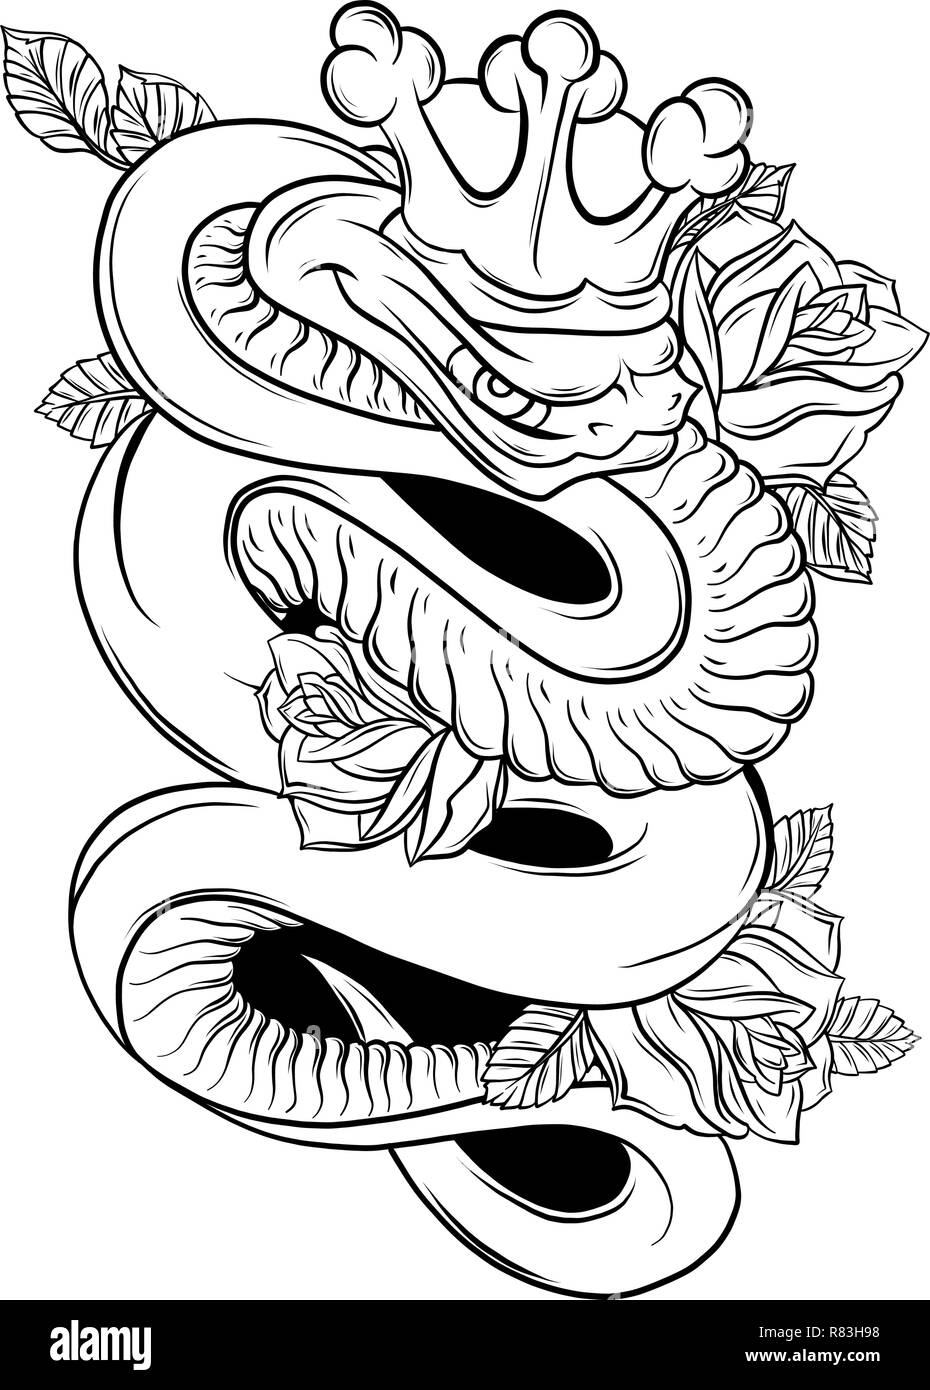 Illustrazione Vettoriale Snake e Rose tradizionale arte del tatuaggio Illustrazione Vettoriale